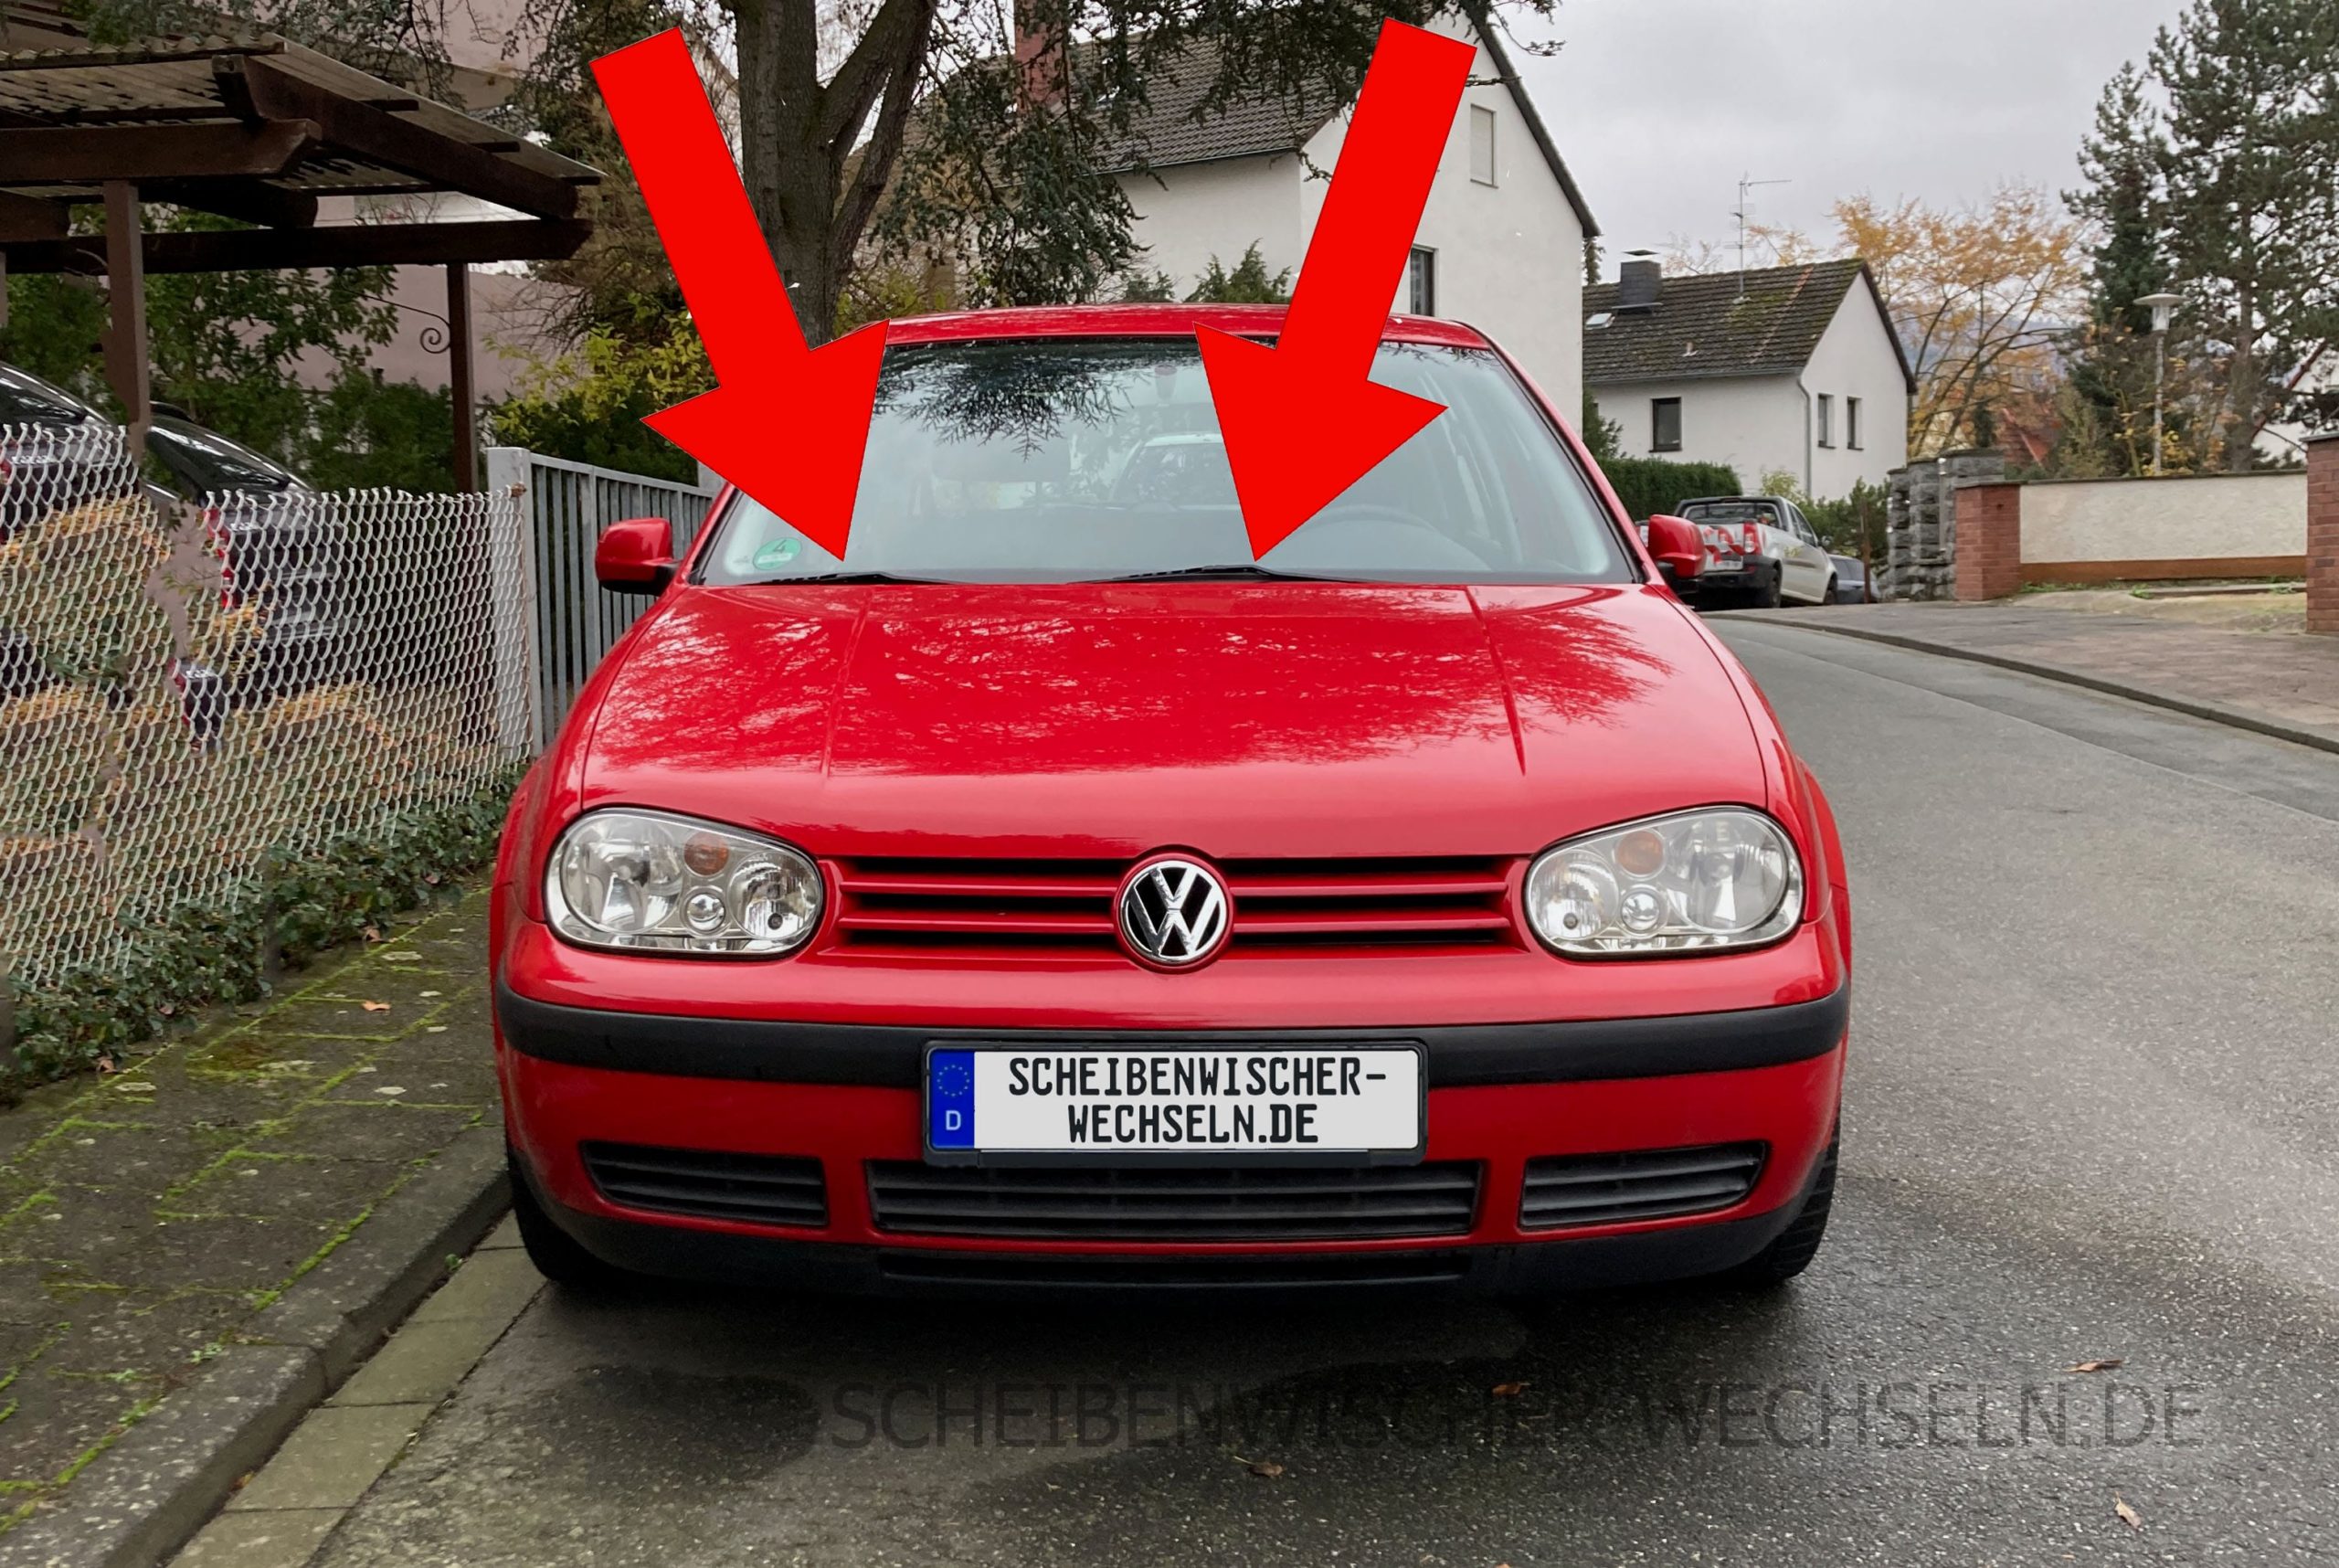 https://scheibenwischer-wechseln.de/wp-content/uploads/Front-Ansicht-des-VW-Volkswagen-Golf-IV-4.-Gen-Modell-1J-Baujahr-von-10-1997-bis-08-2003-vorne-scaled.jpg